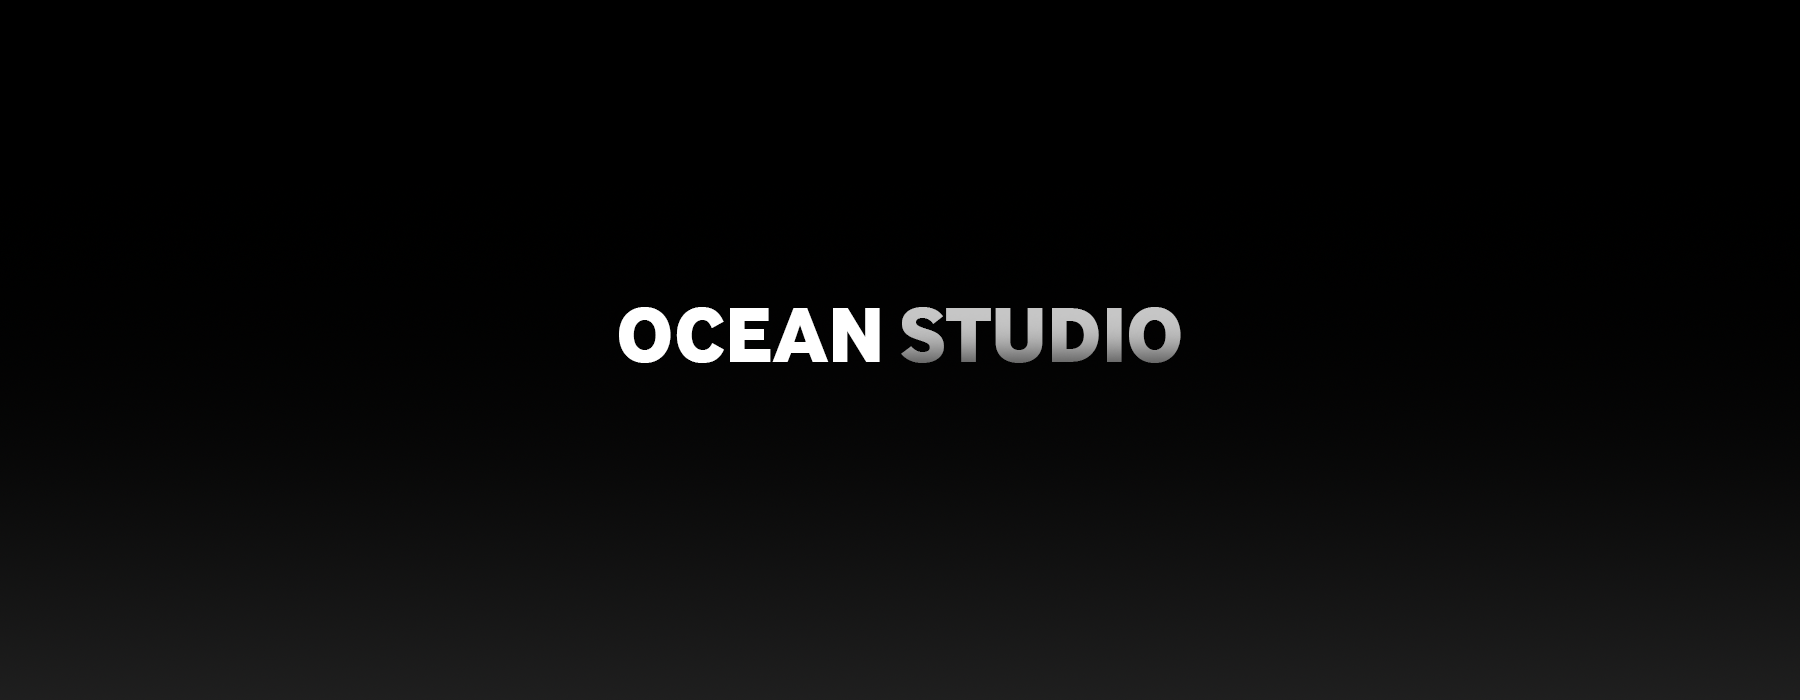 Persbericht Ocean Studio header